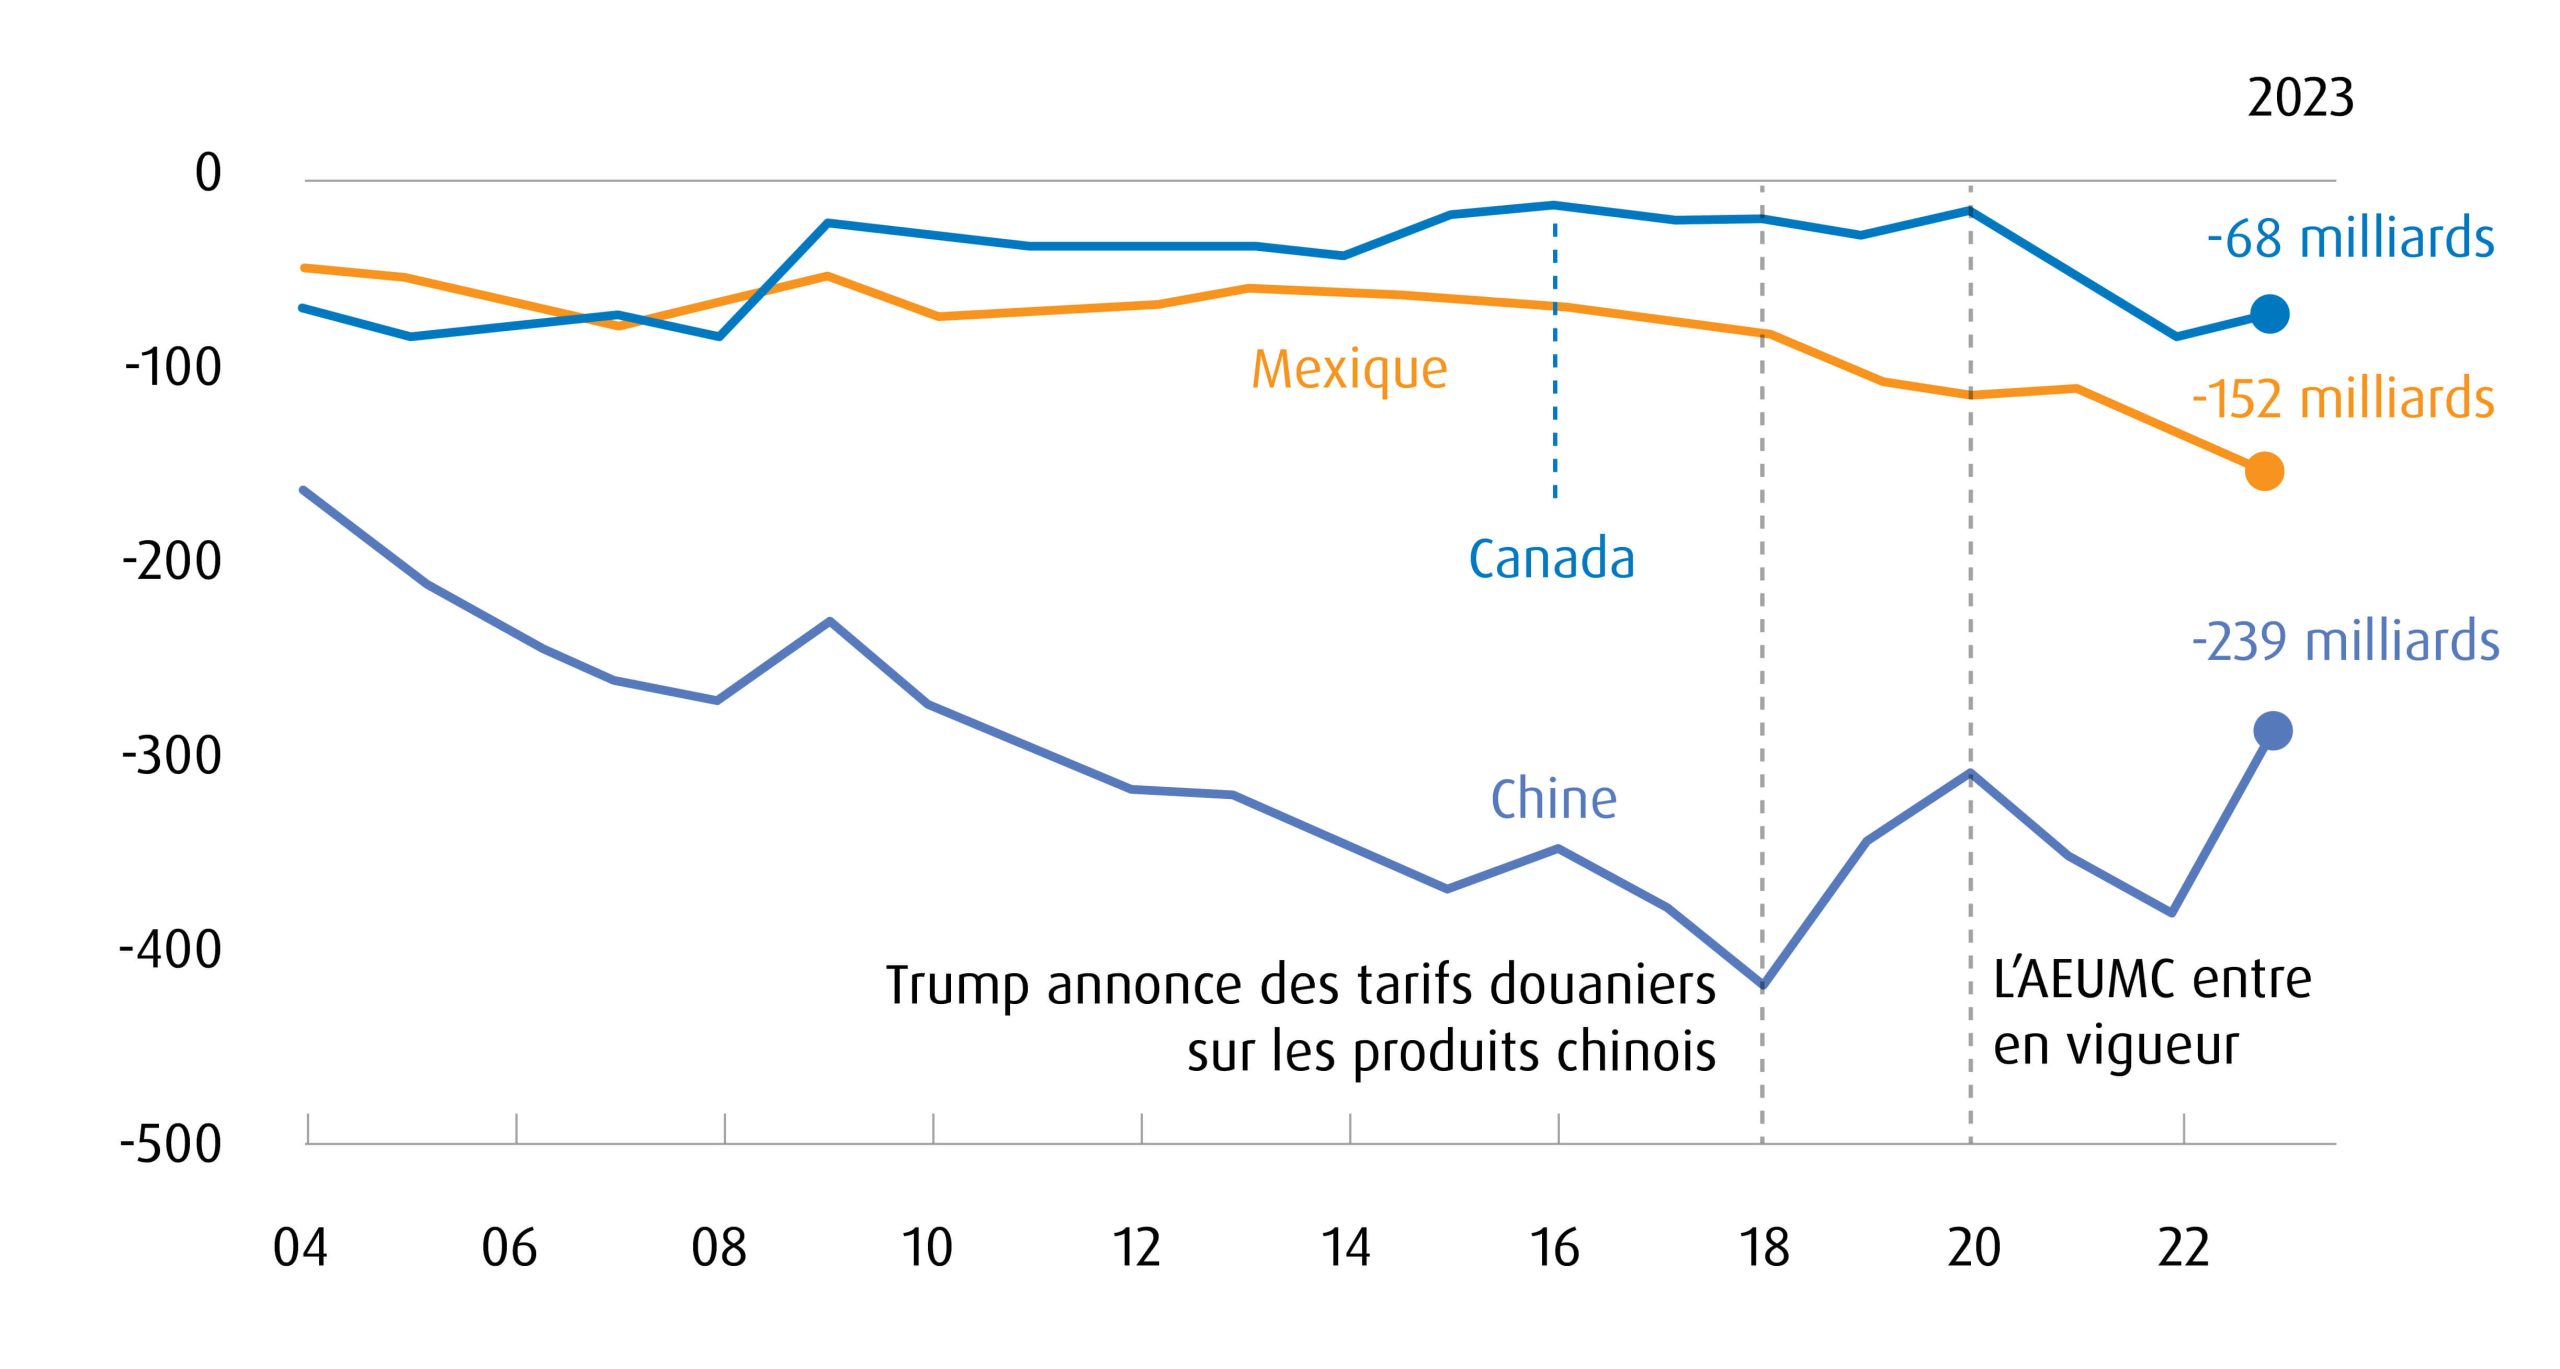 Graphique linéaire montrant les soldes commerciaux bilatéraux américains avec le Mexique, le Canada et la Chine depuis 2004.